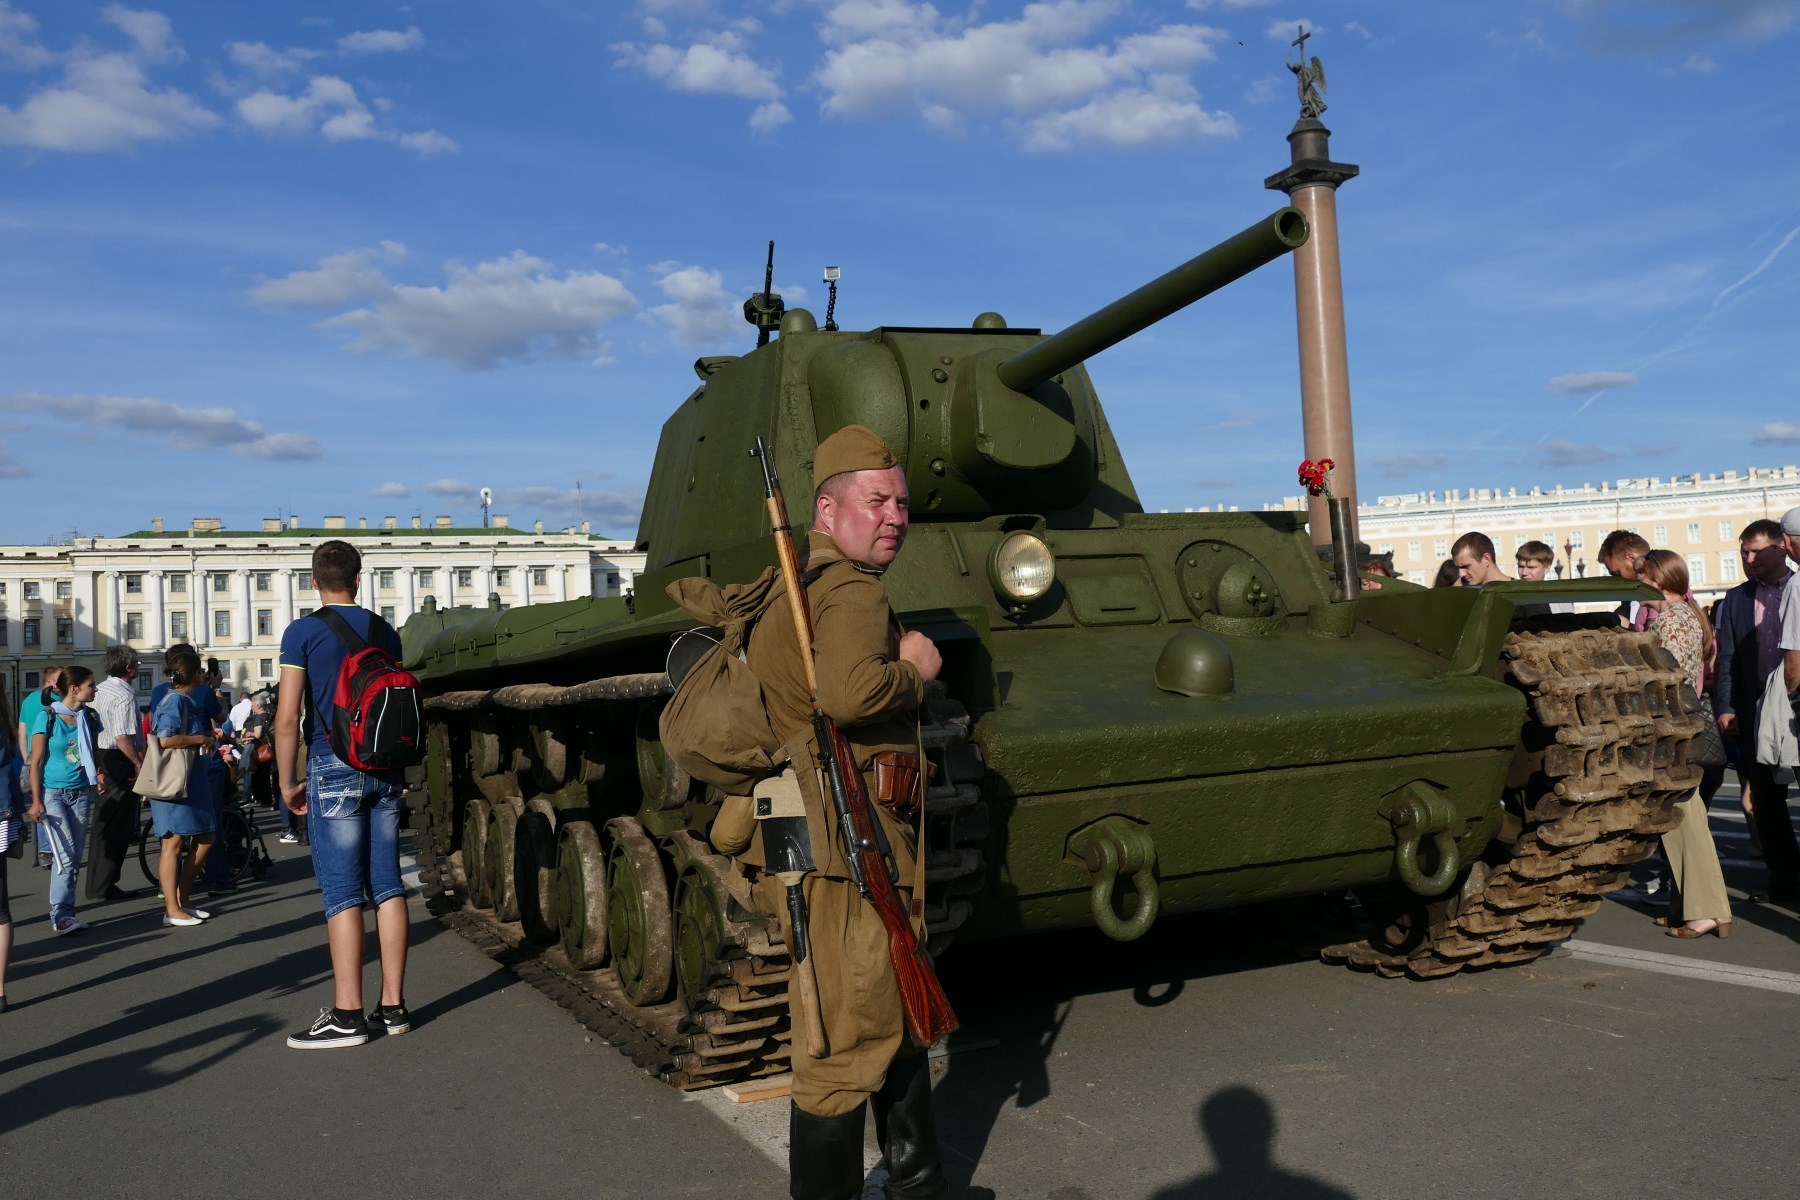 танк с пулеметом на башне